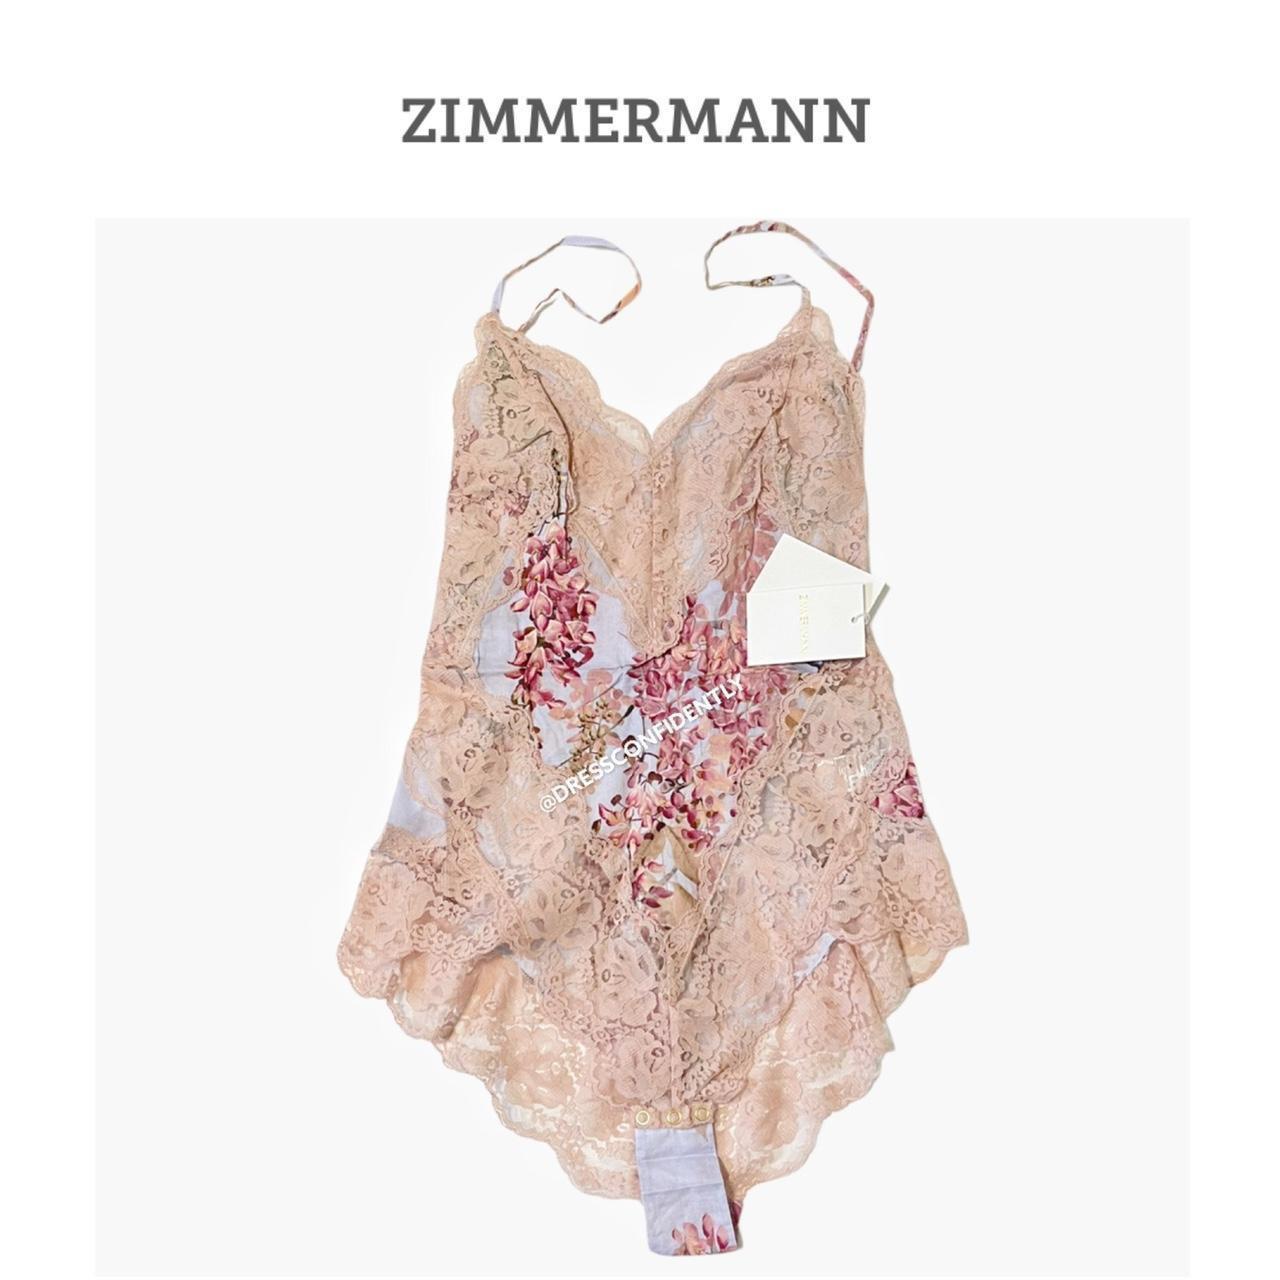 Zimmermann Women's Pink and Cream Bodysuit